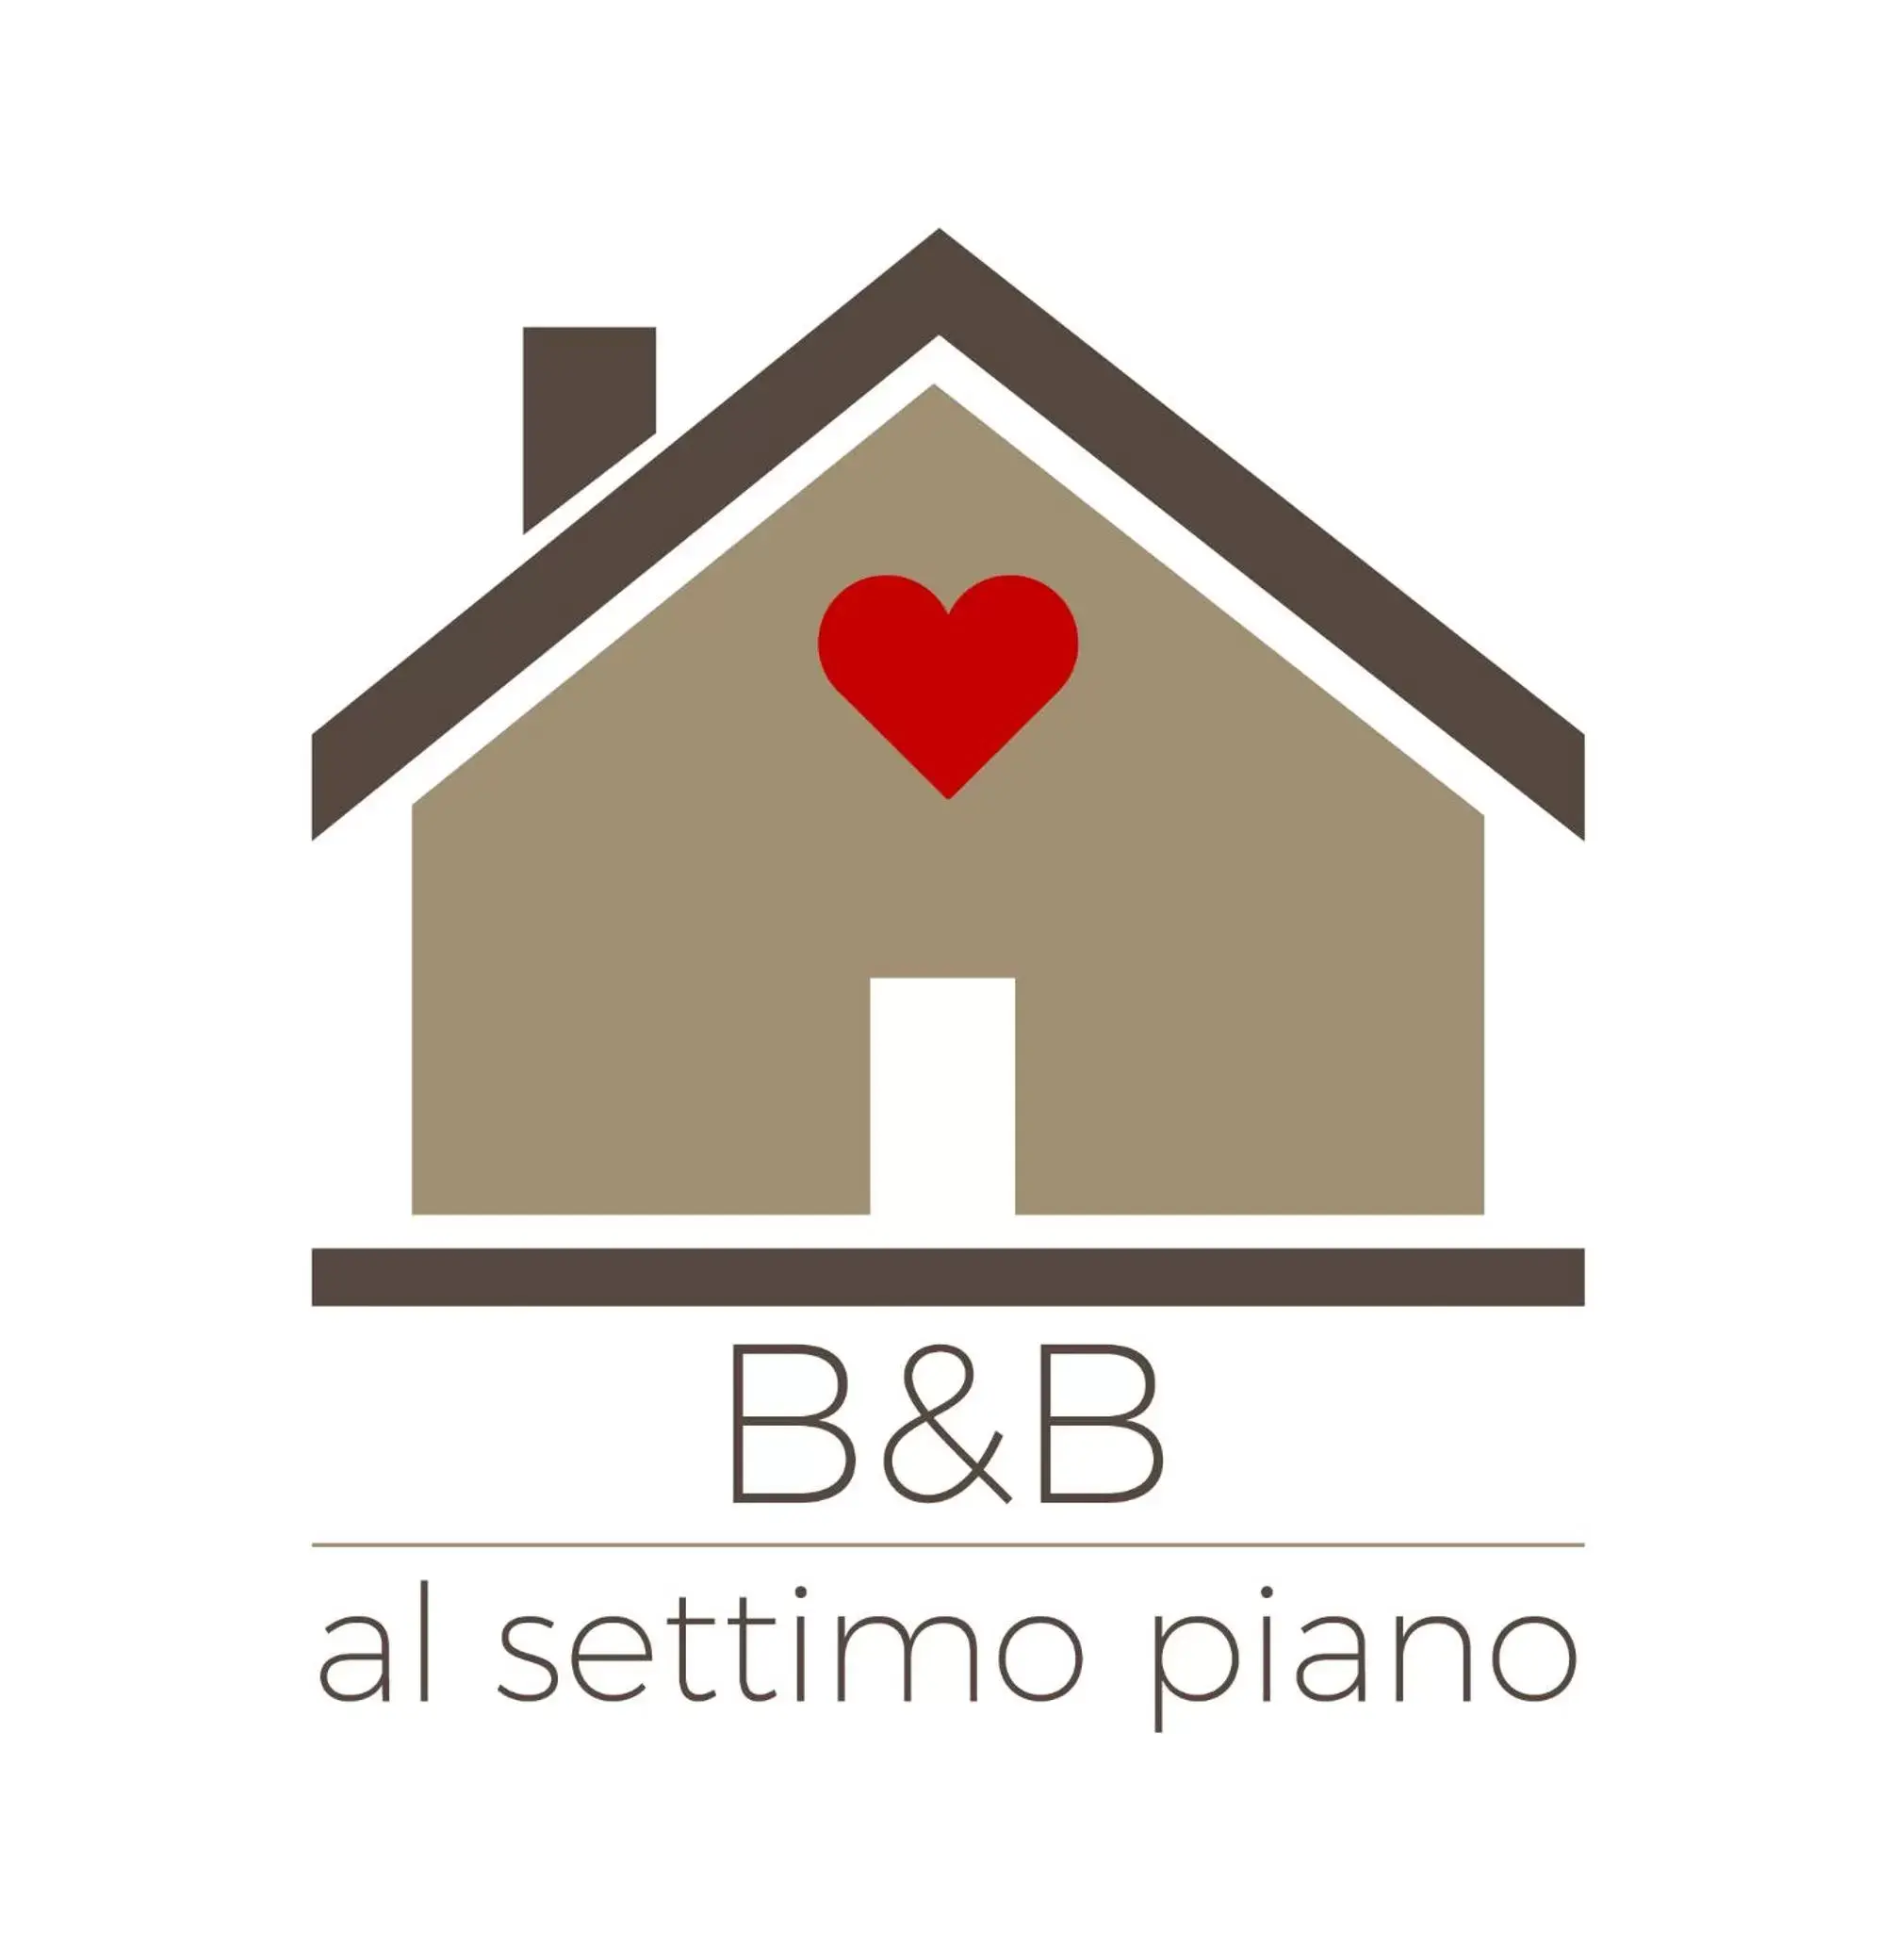 Property logo or sign in Al Settimo Piano